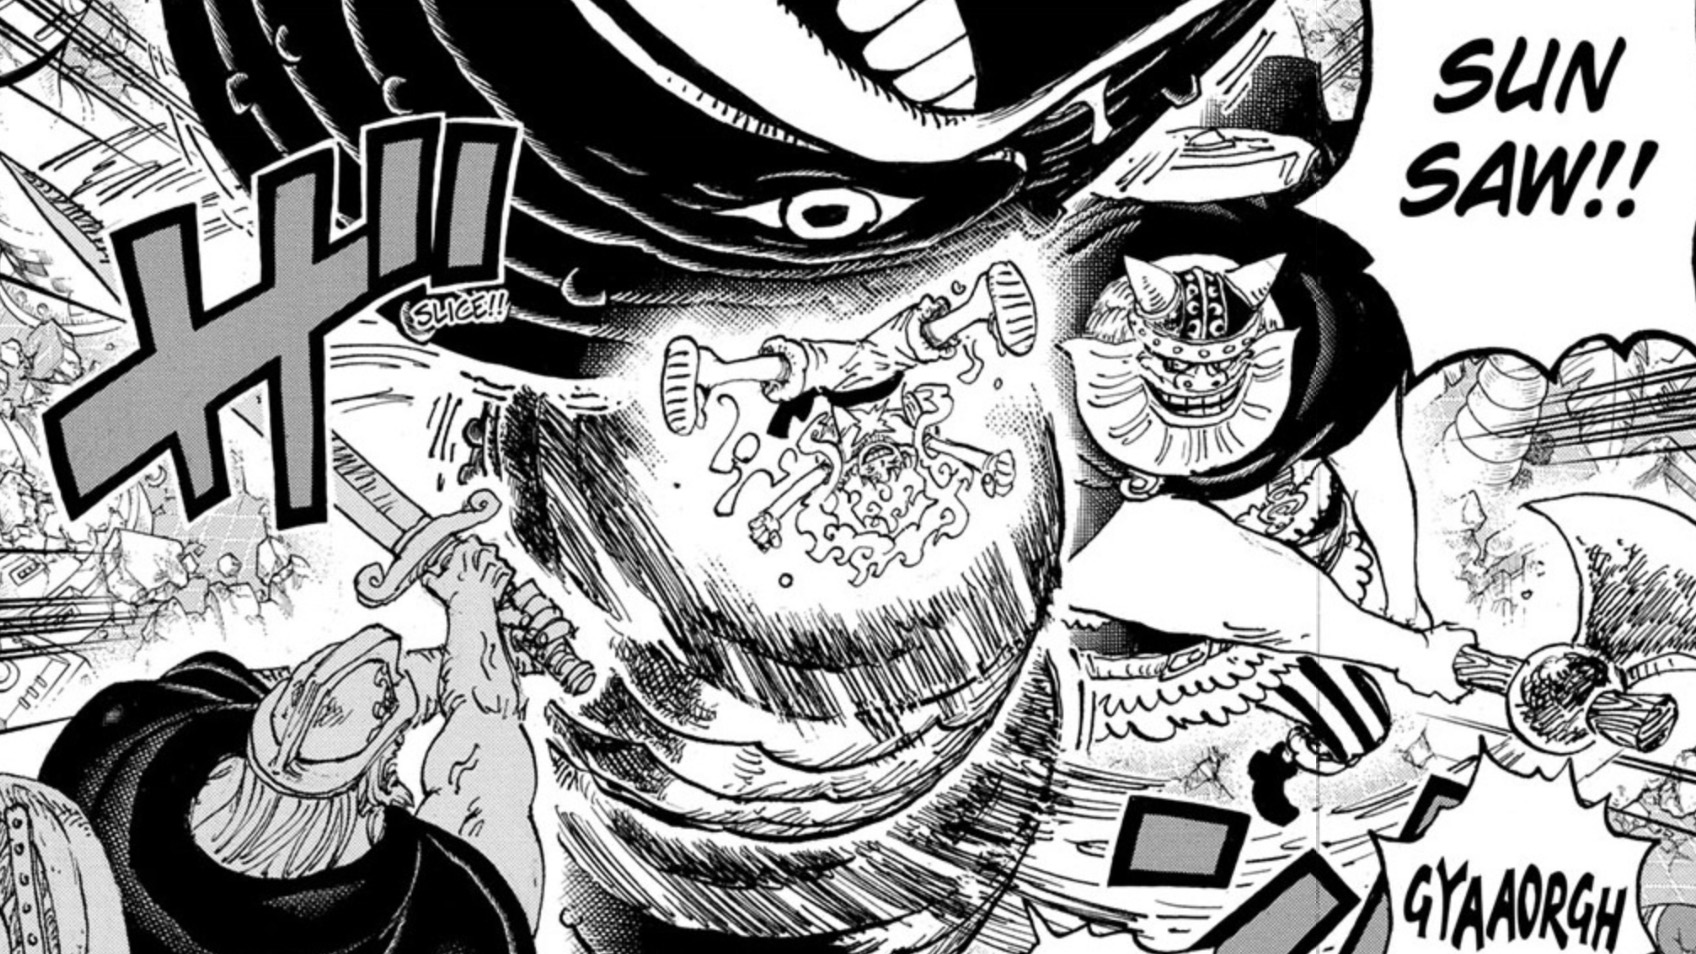 Art du chapitre 1110 de One Piece